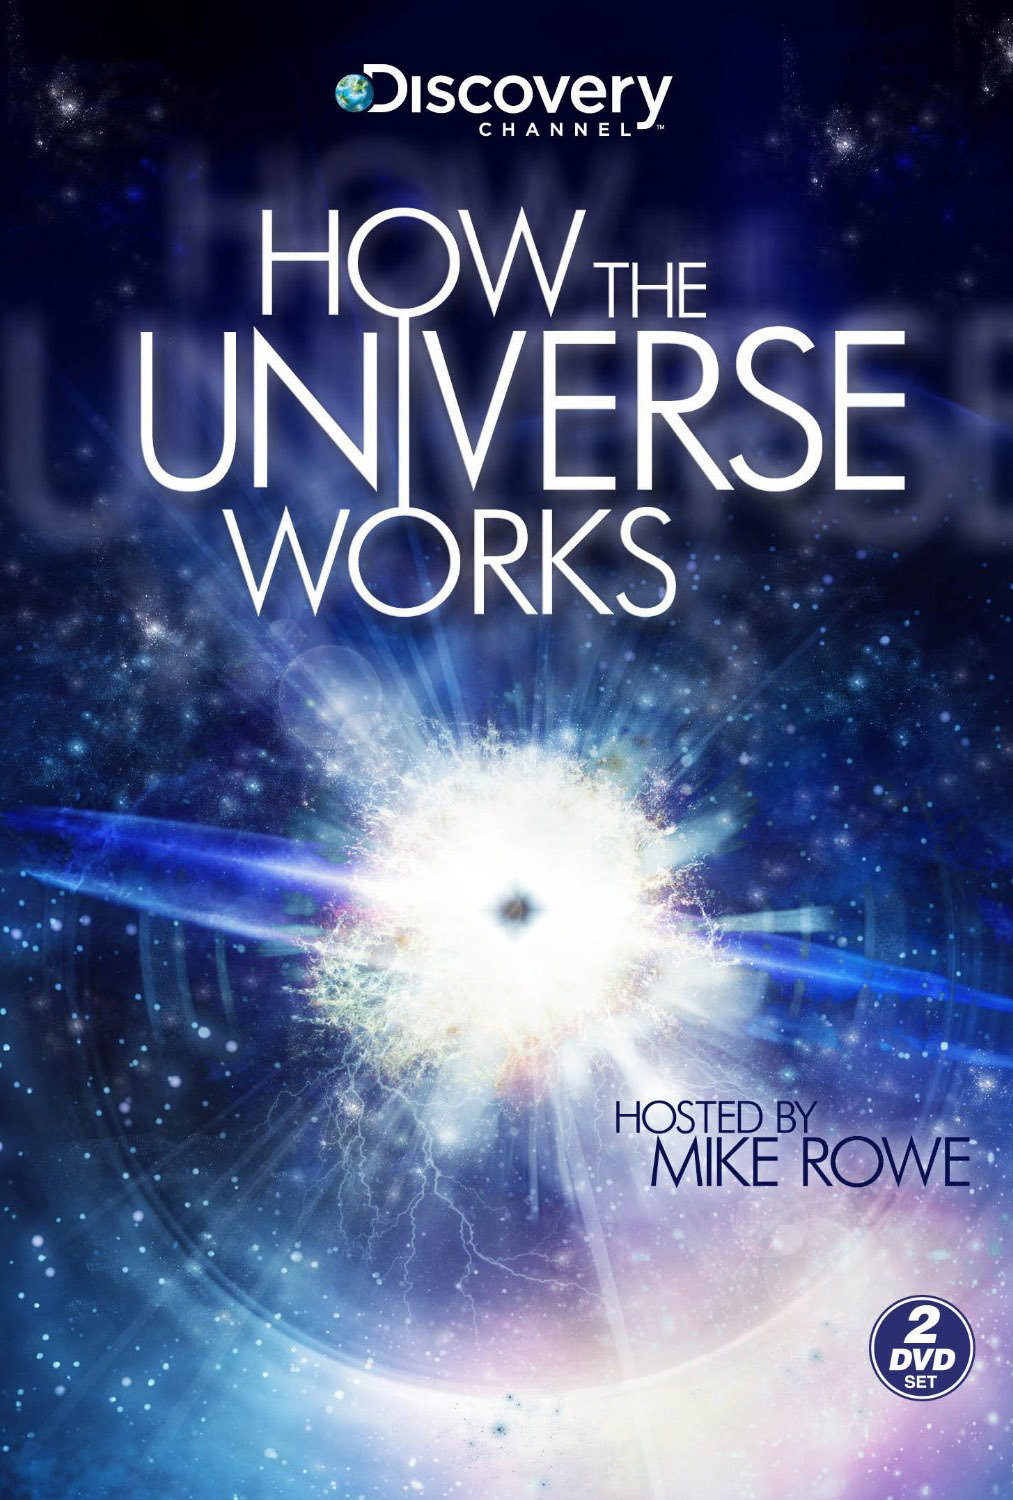 了解宇宙是如何运行的 第一季 / 宇宙解码 / 解读宇宙 [DIY/双语简繁字幕] How the Universe Works 2010 1080i BluRay AVC DTS-HD MA 5.1-bbchen@Audies[63.78GB]-2.jpg